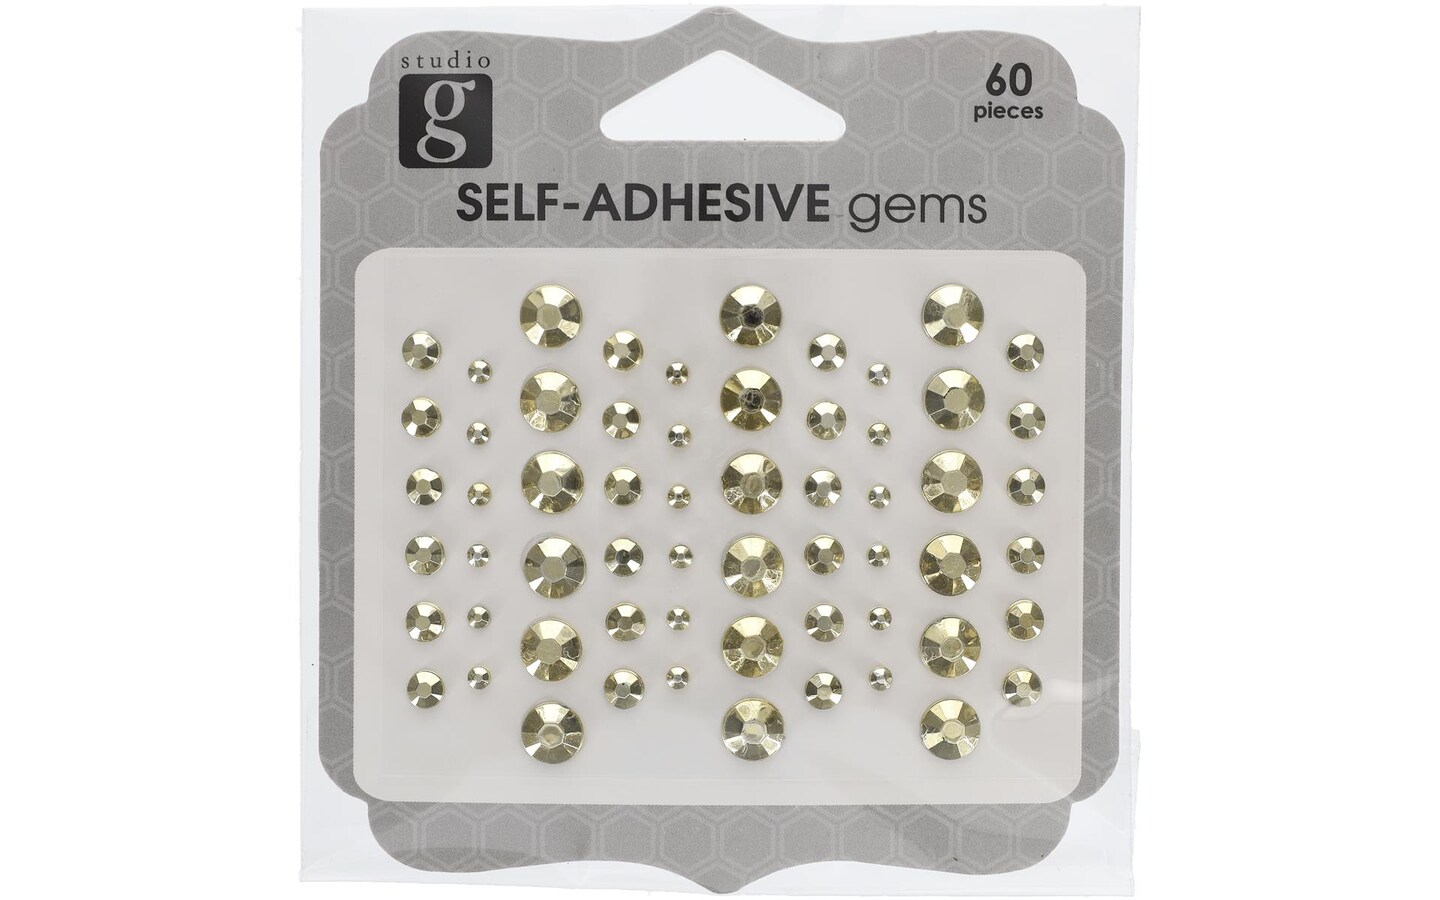 4. Adhesive Nail Art Gems - wide 1